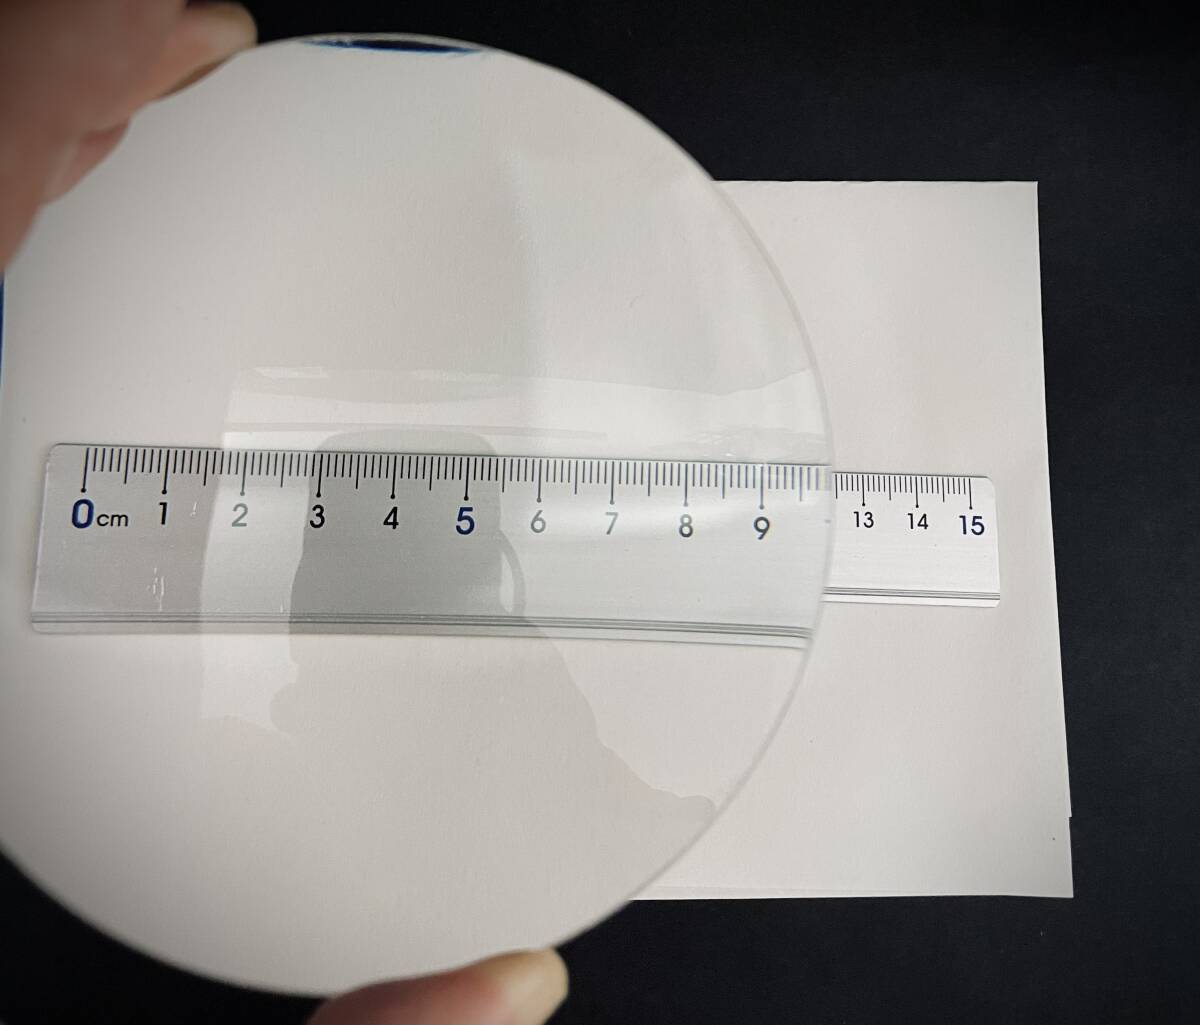  линзы #221 стекло линзы диаметр 11cm выпуклость линзы 